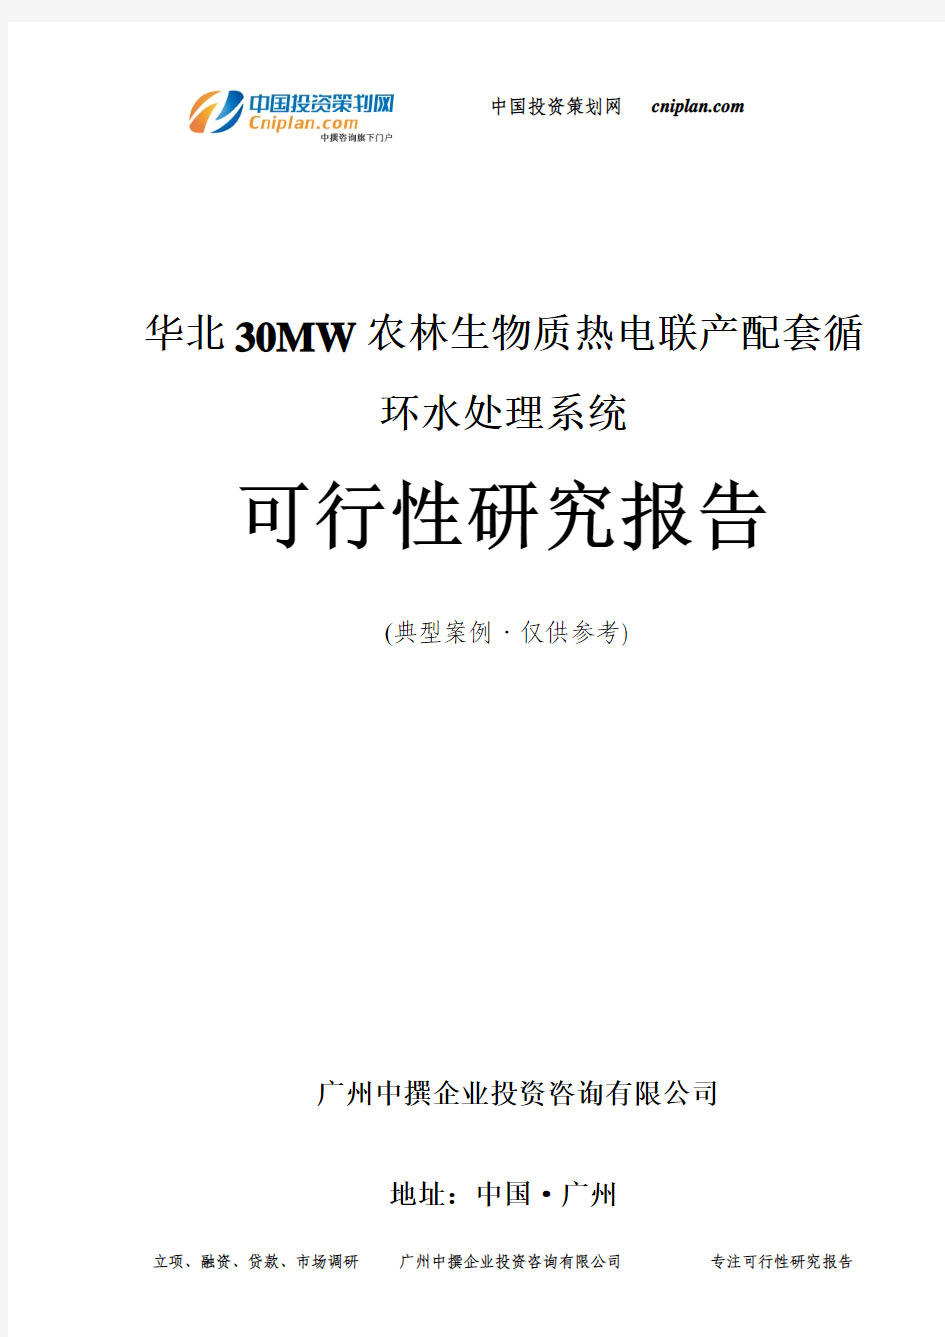 华北30MW农林生物质热电联产配套循环水处理系统可行性研究报告-广州中撰咨询